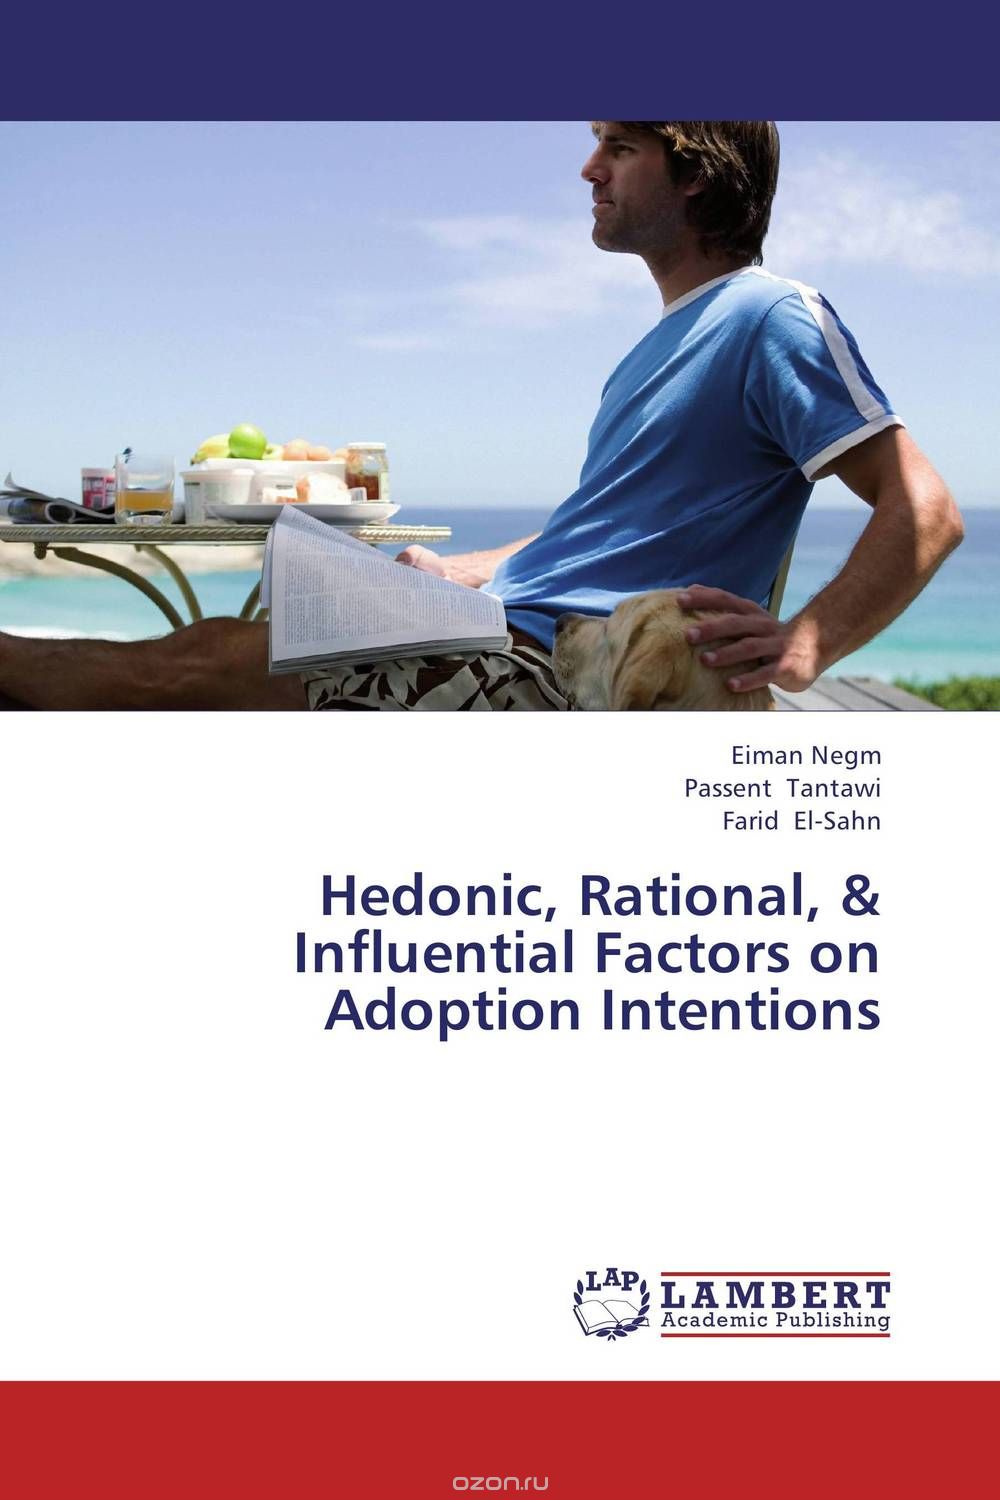 Скачать книгу "Hedonic, Rational, & Influential Factors on Adoption Intentions"